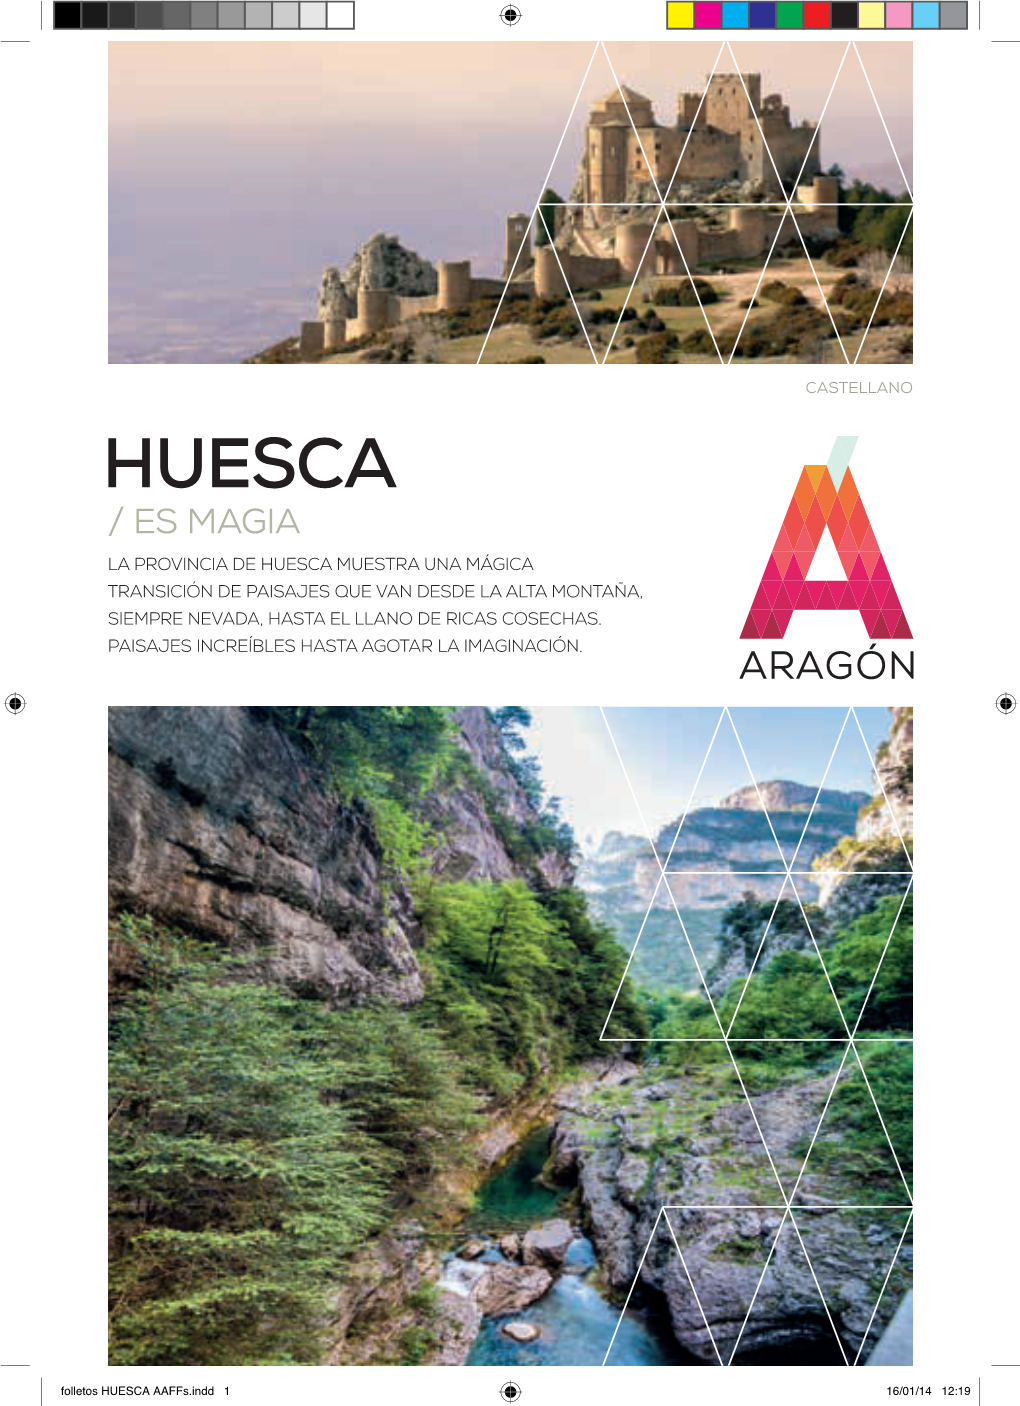 Huesca Es Magia Para El Turista Y Su Potente Infraestructura De Servicios Consigue Que El Visitante Siempre Termine Encantado